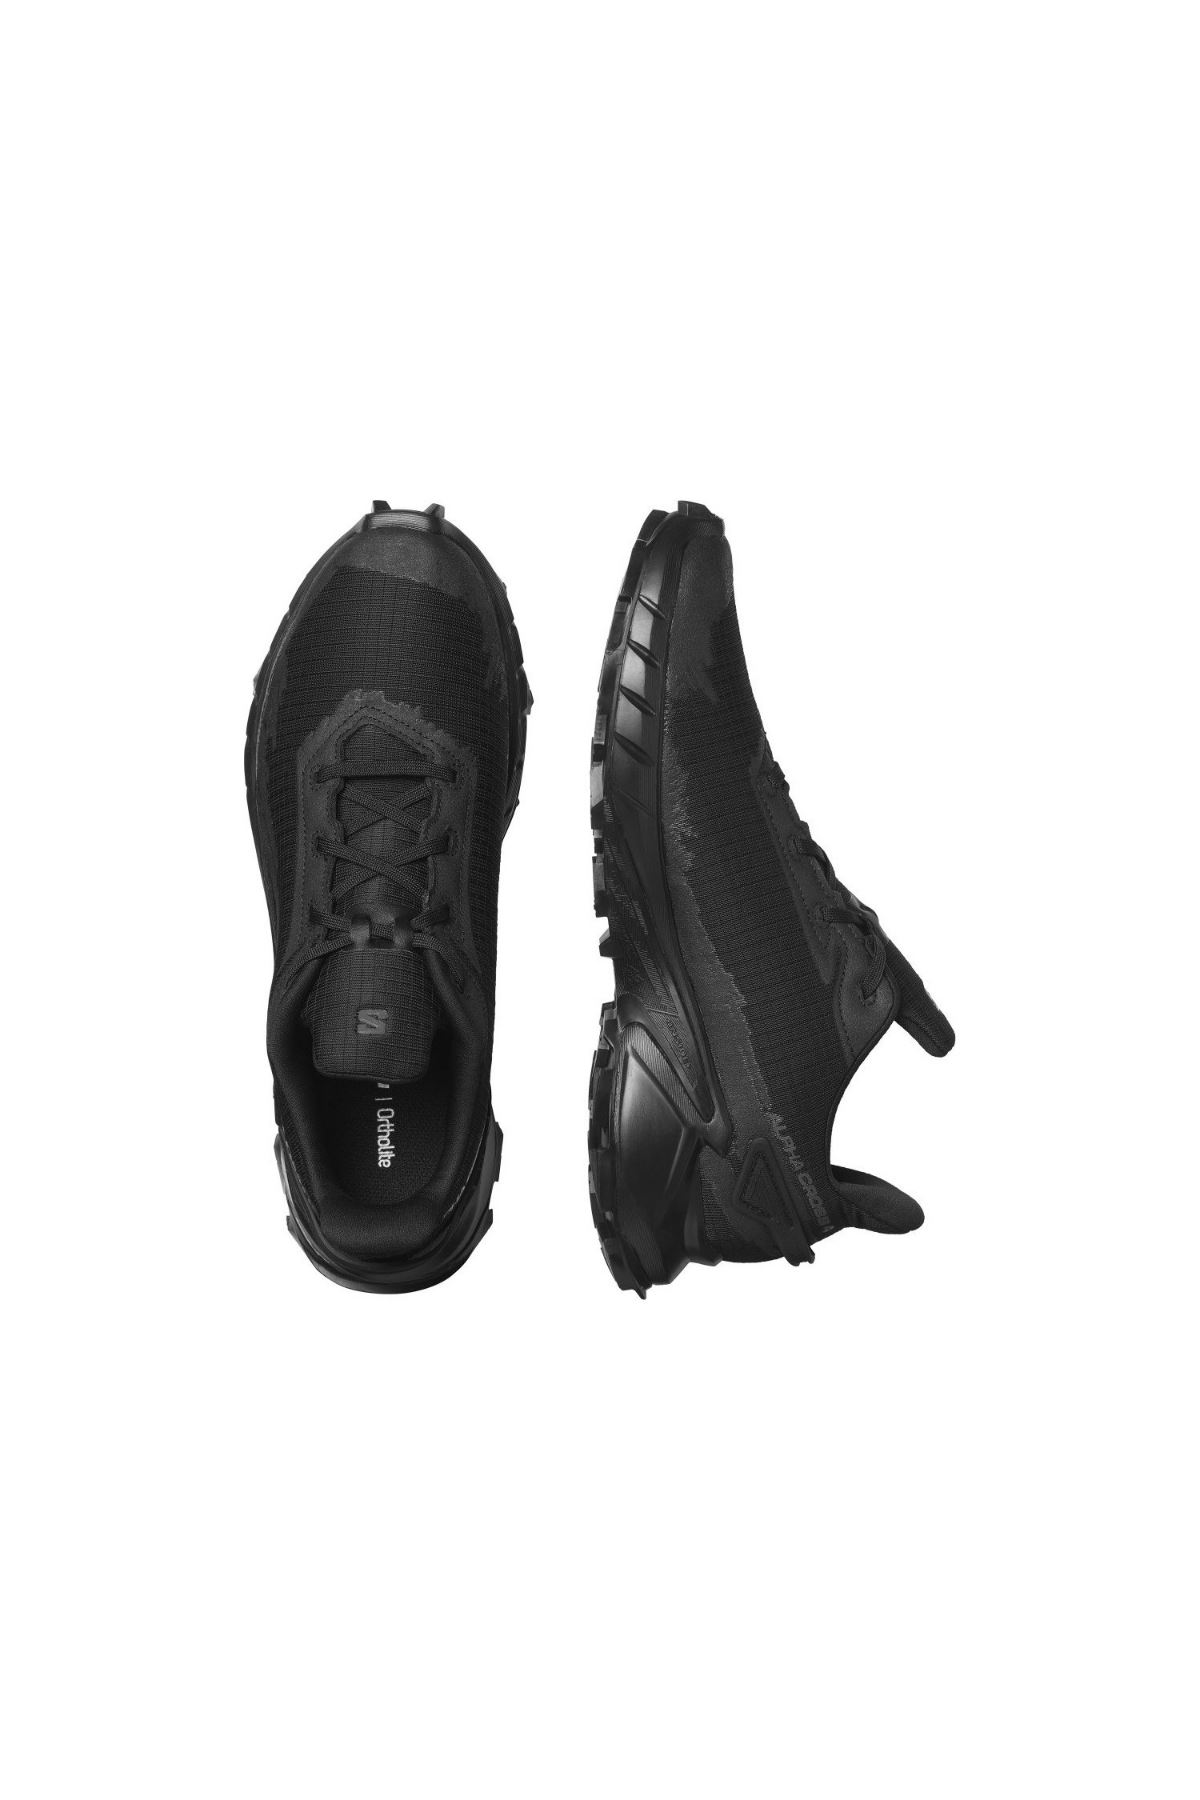 Alphacross 4 Erkek Siyah Spor Ayakkabı - L47063900